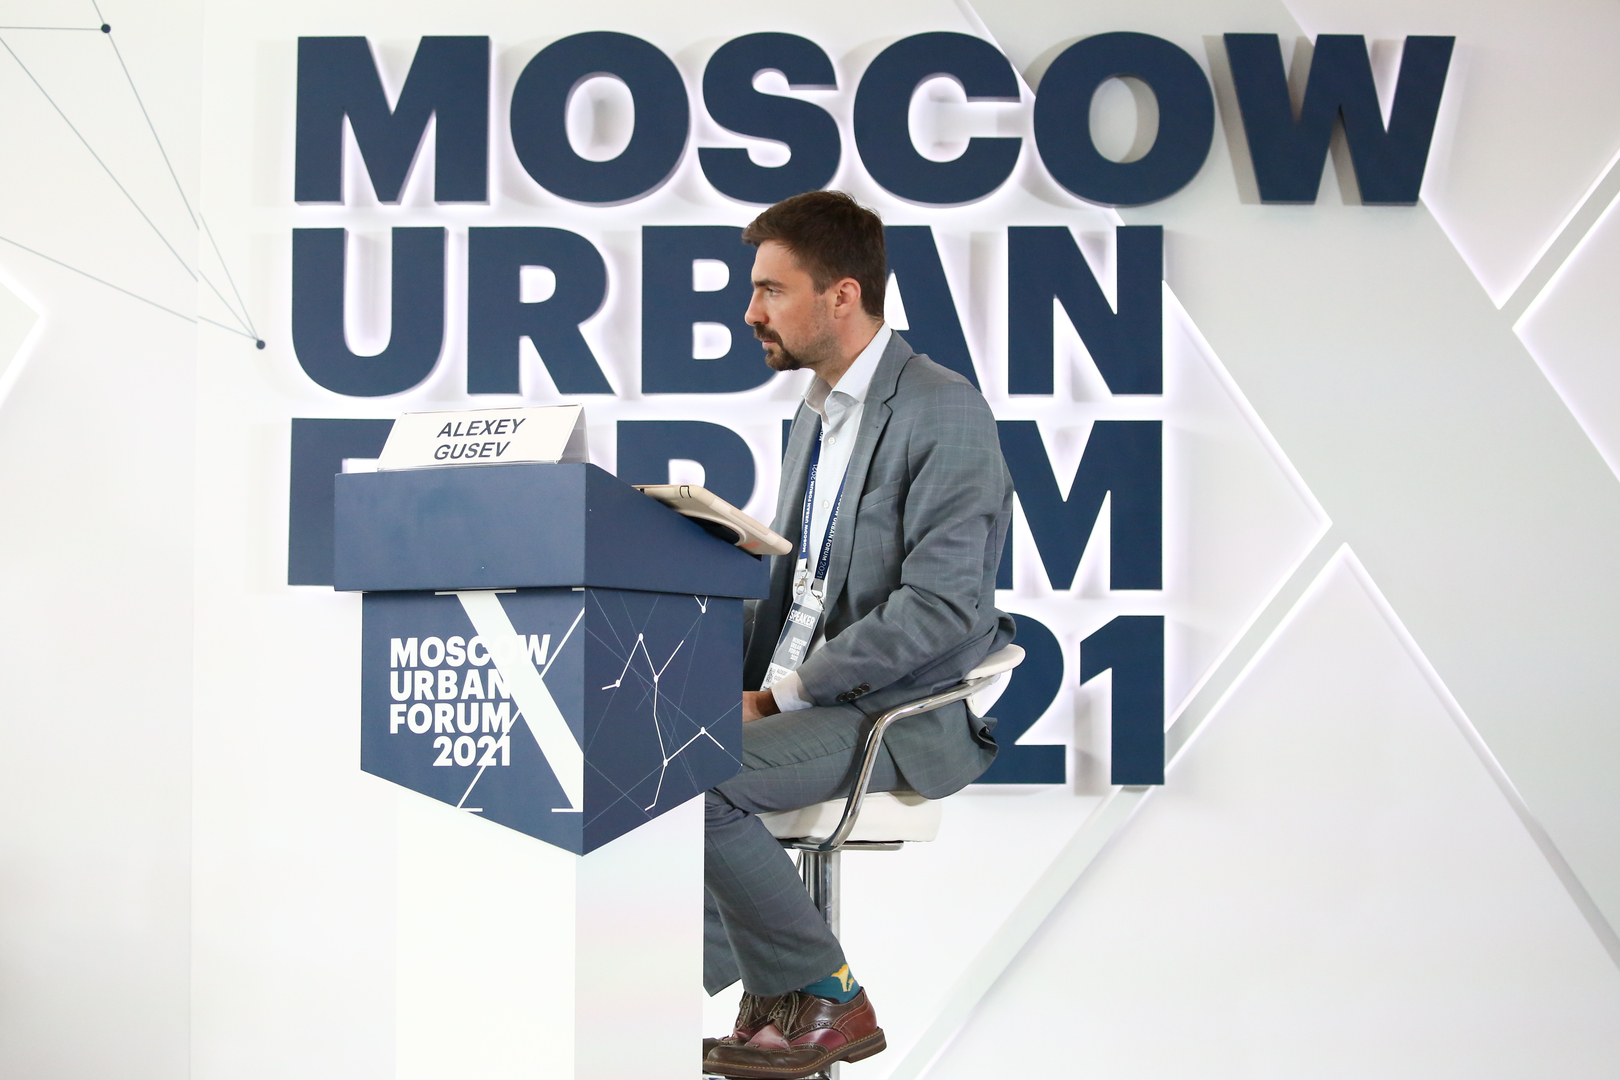 Moscow Urban forum 2021 logo. Российский венчурный форум 2021 фото стенд стартап. Урбанистический форум 2 августа.